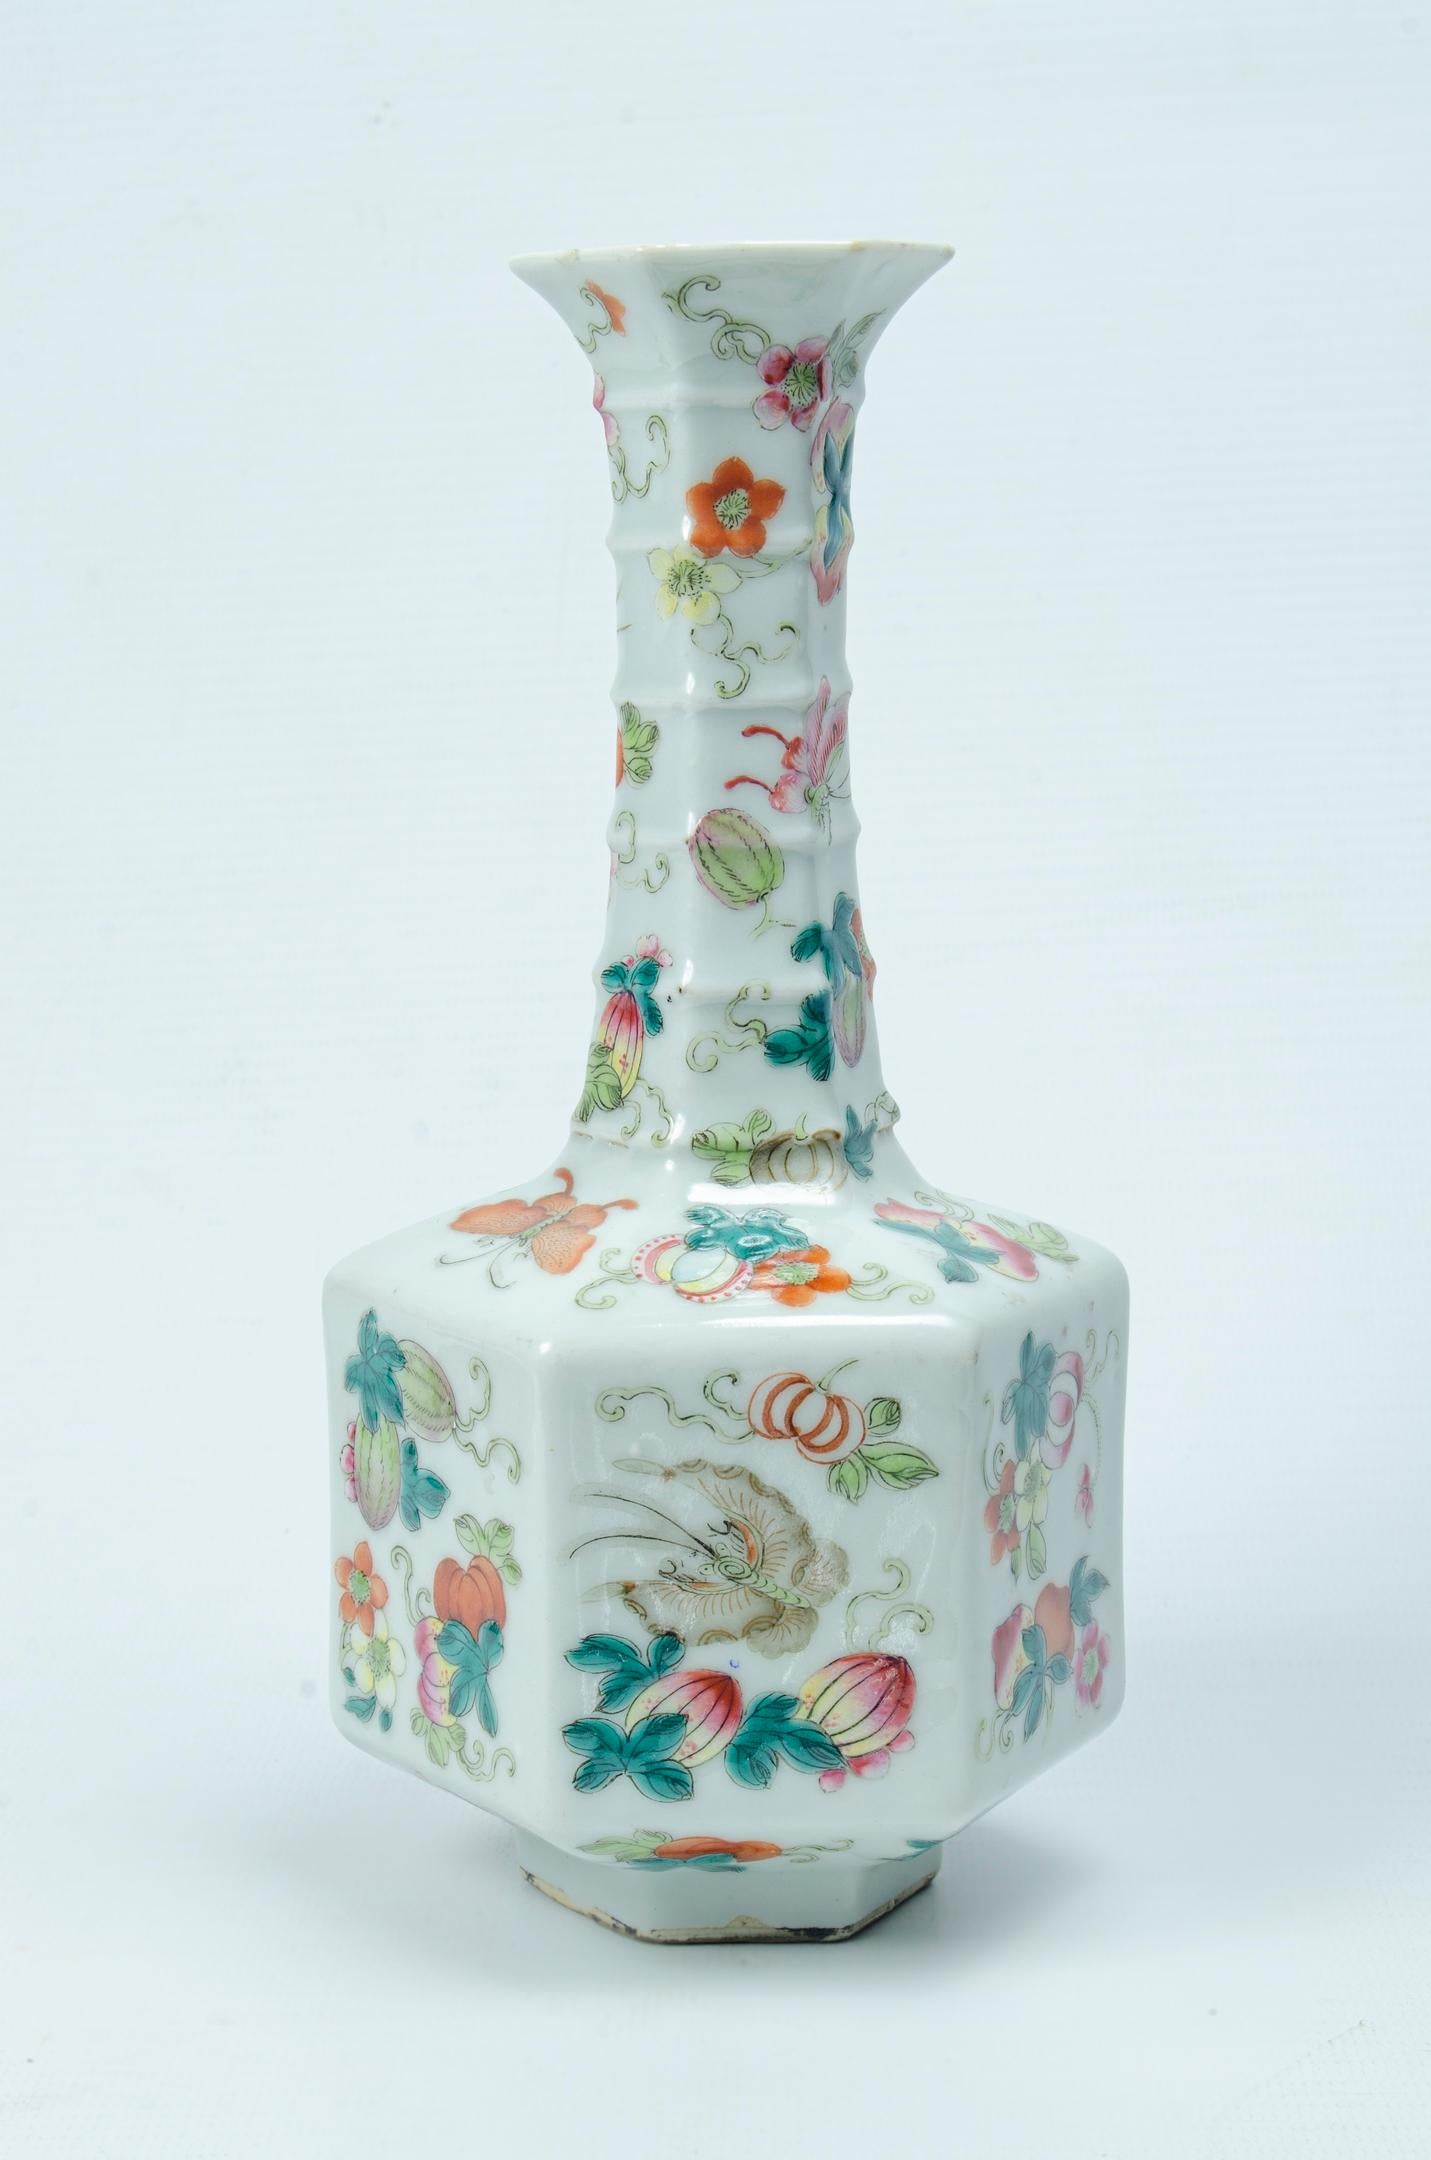 Vase en porcelaine chinoise
Origine Chine peint à la main
motif floral
parfait état.
vers 1900 